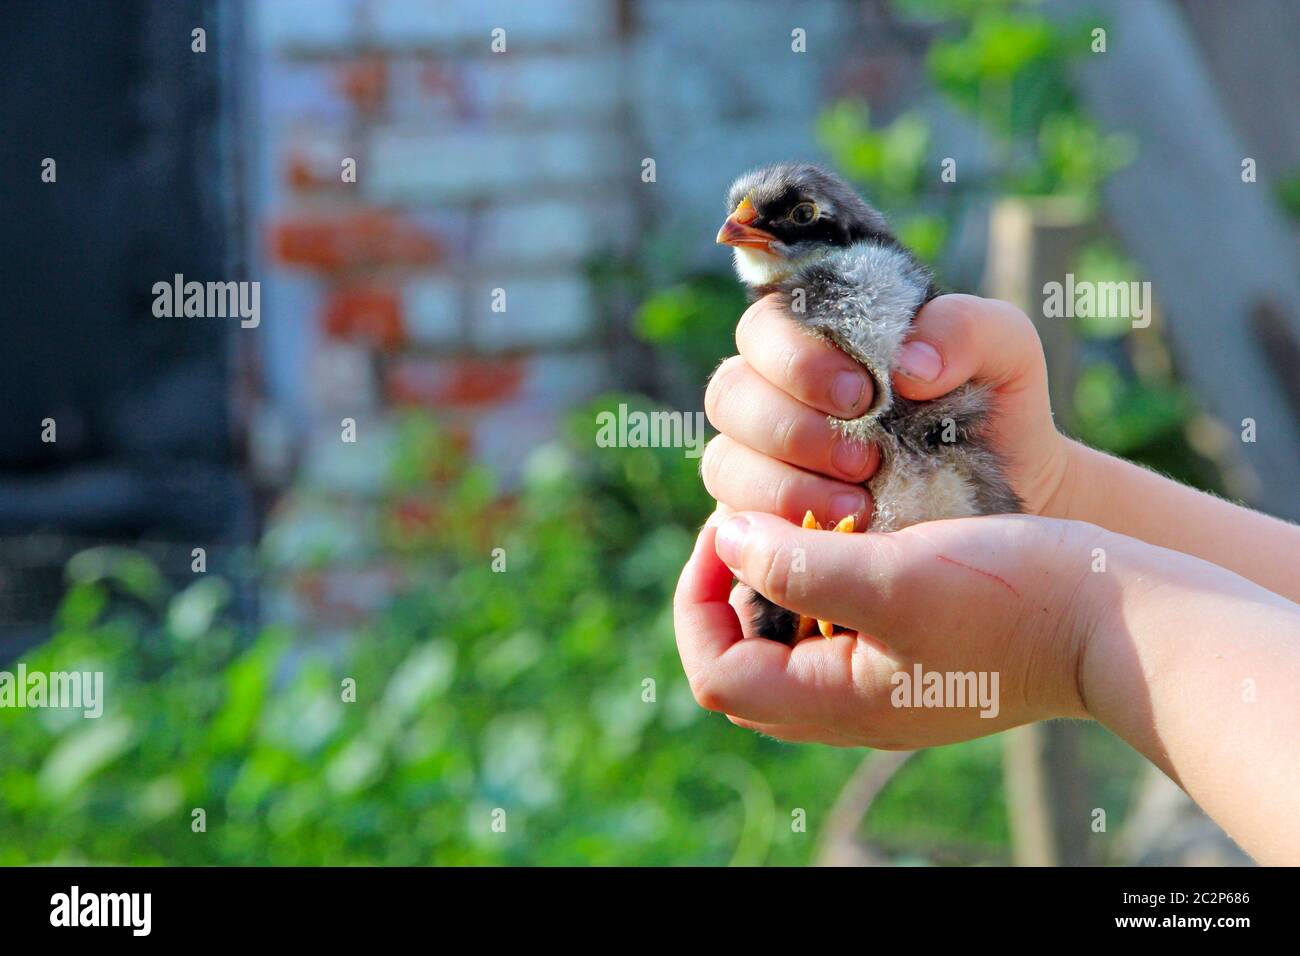 Poulet bébé dans une ferme de volaille. Jeune poulet sur la main humaine Banque D'Images